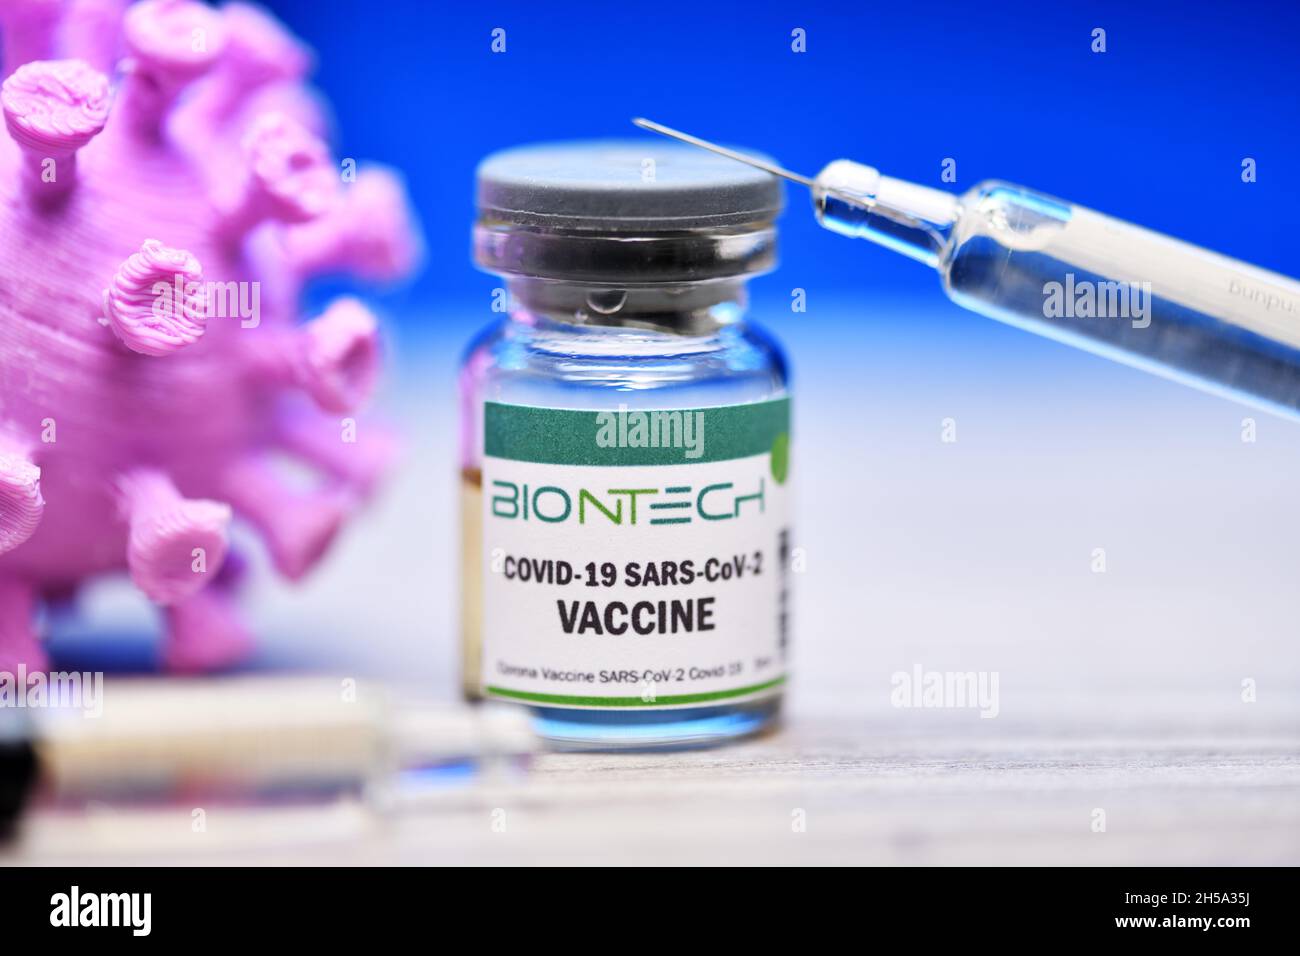 Injektionsflasche mit Impfspritze und Coronavirus-Modell, Corona-Impfstoff von Biontech, Symbolfoto Stock Photo